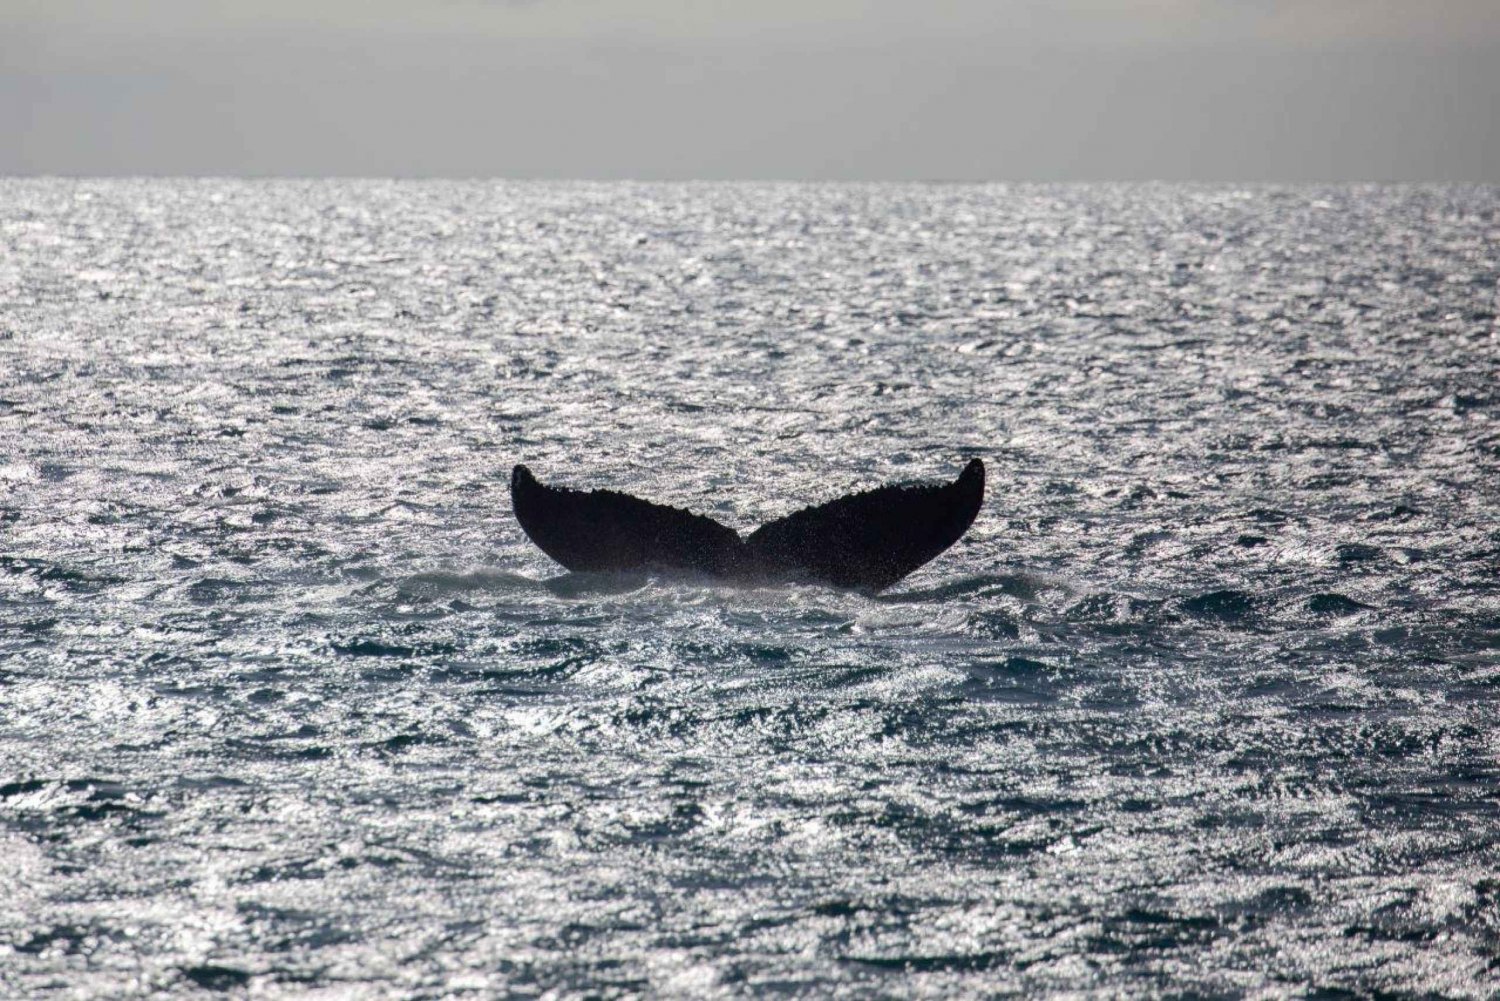 Maui: Koa Kai Whale Watch Adventure